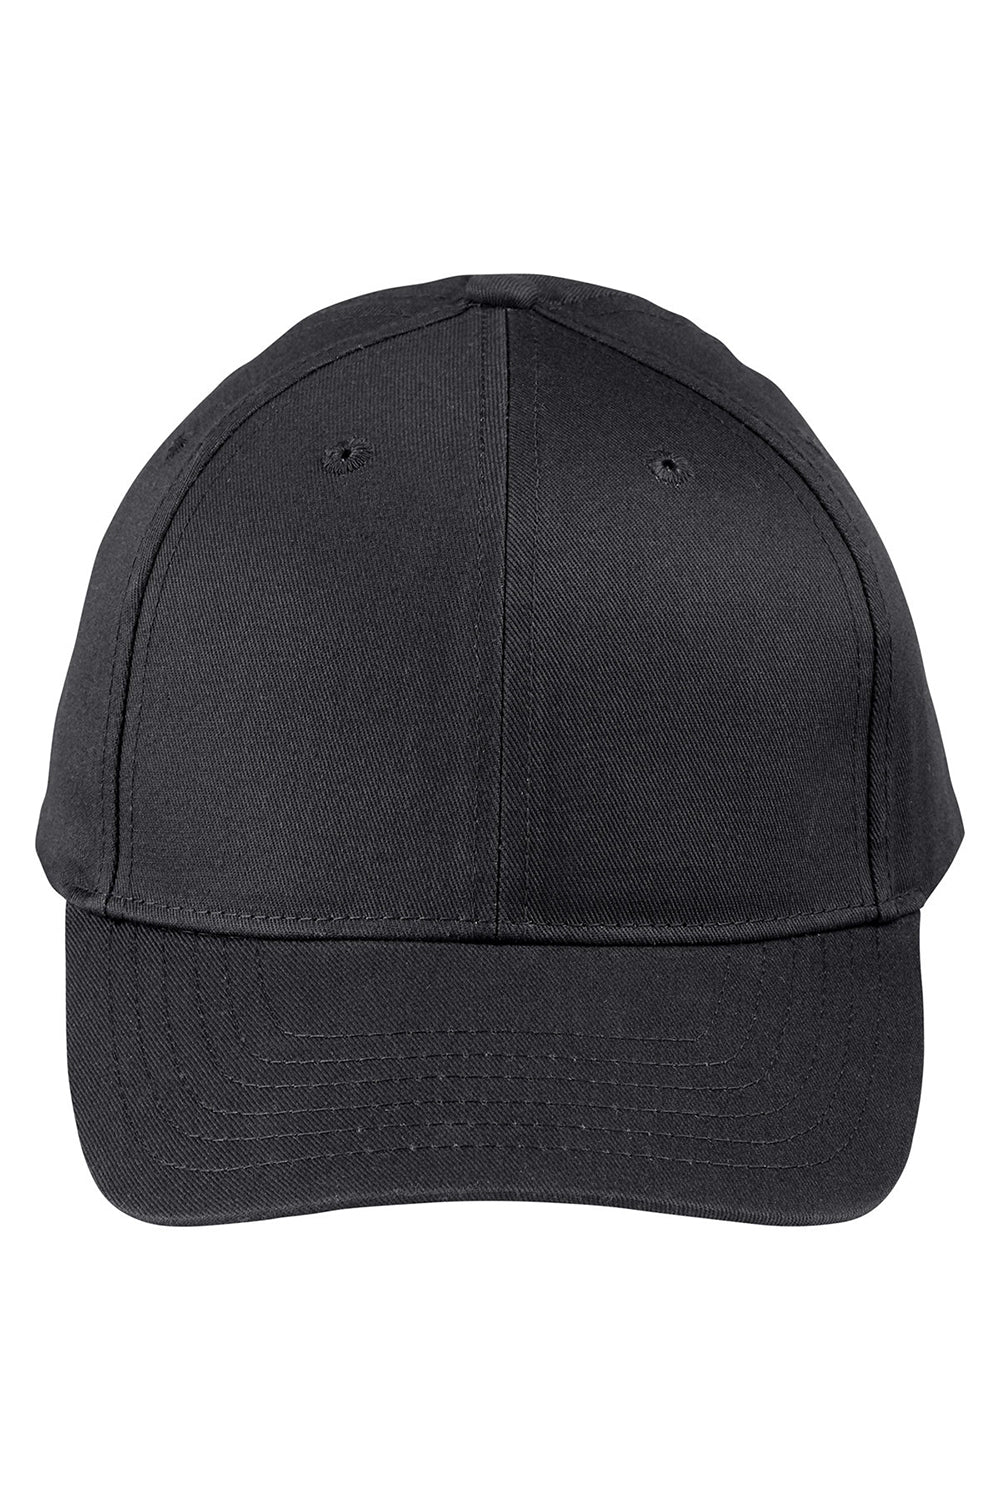 Big Accessories BX020SB Mens Twill Snapback Hat Black Flat Front